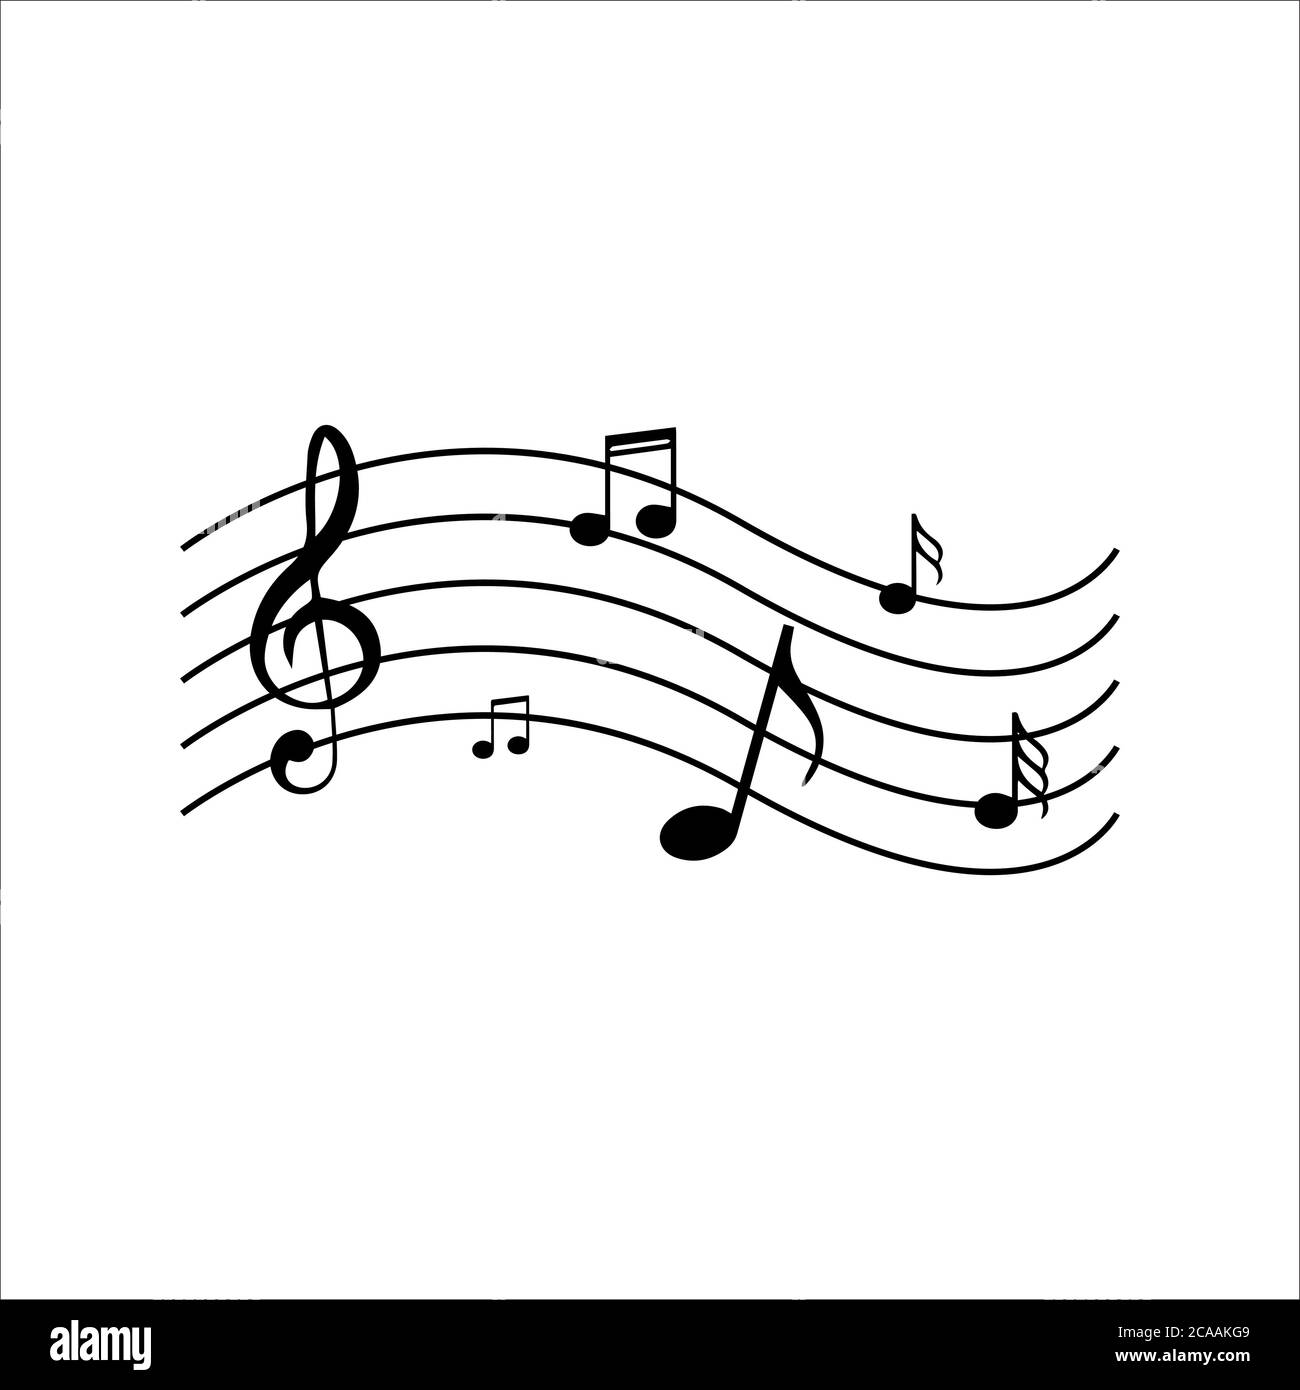 Die Symphonie der Musik Note Vektor-Design. Instrumental schöne Lied Symbol  Illustrationen Stock-Vektorgrafik - Alamy